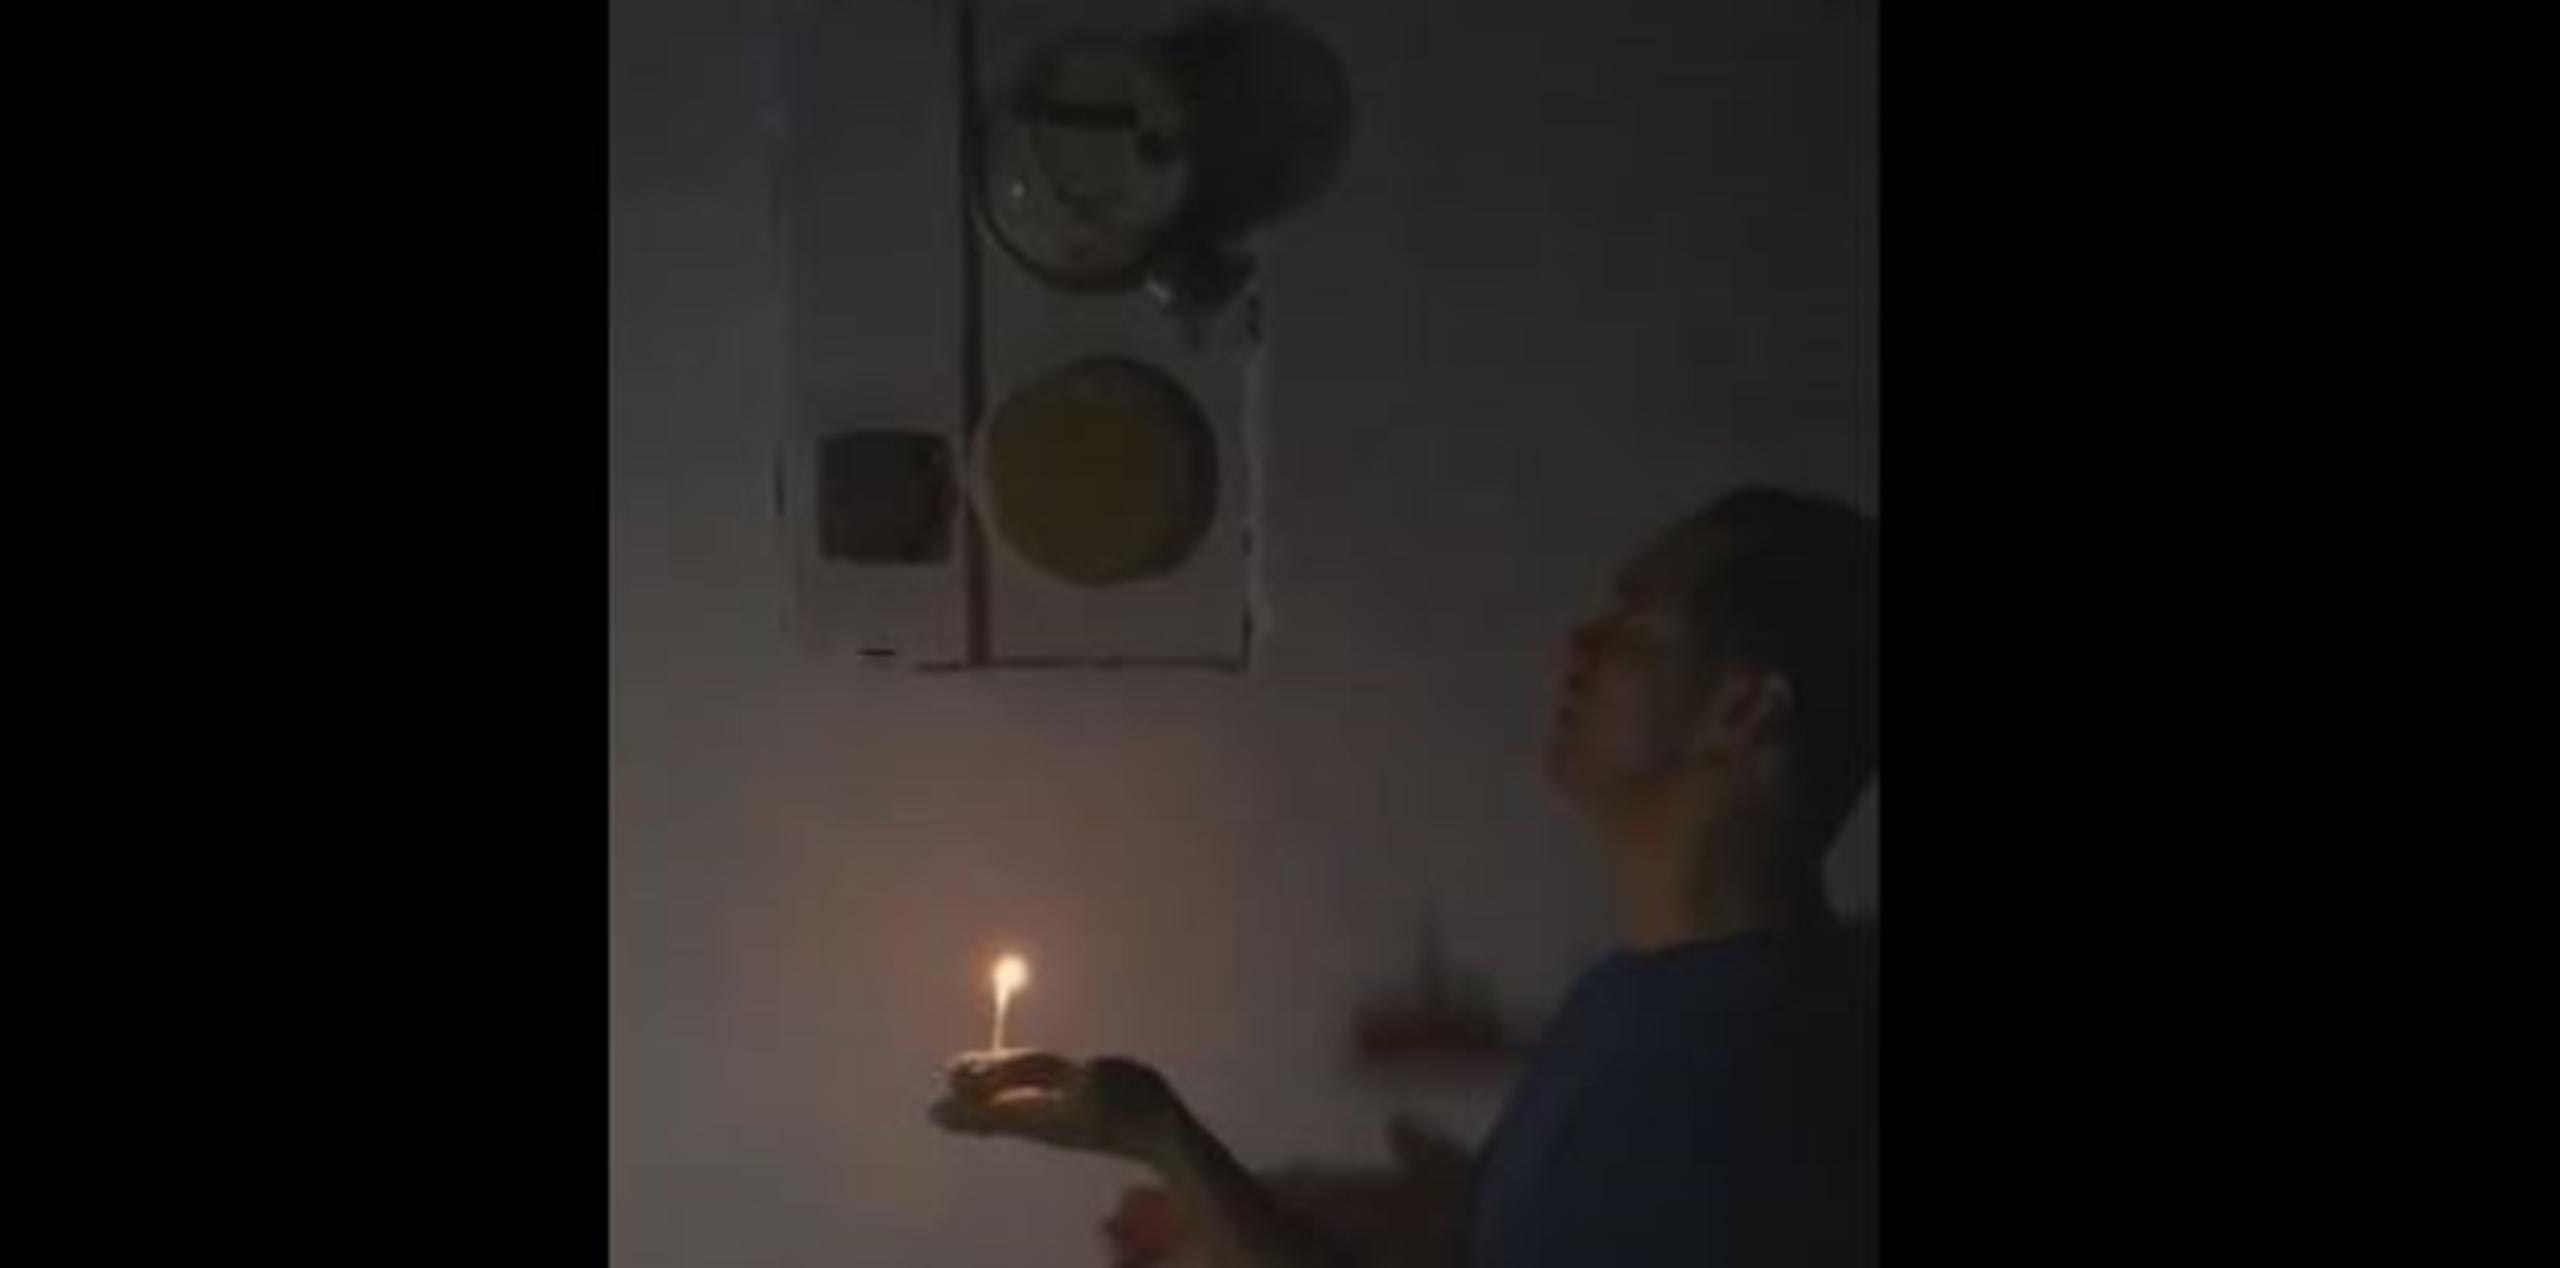 Con un pequeño bizcocho en mano y una vela, Collazo se paró frente al aparato para cantarle esa improvisada canción que refleja la triste realidad de cientos de miles de puertorriqueños. (Captura)